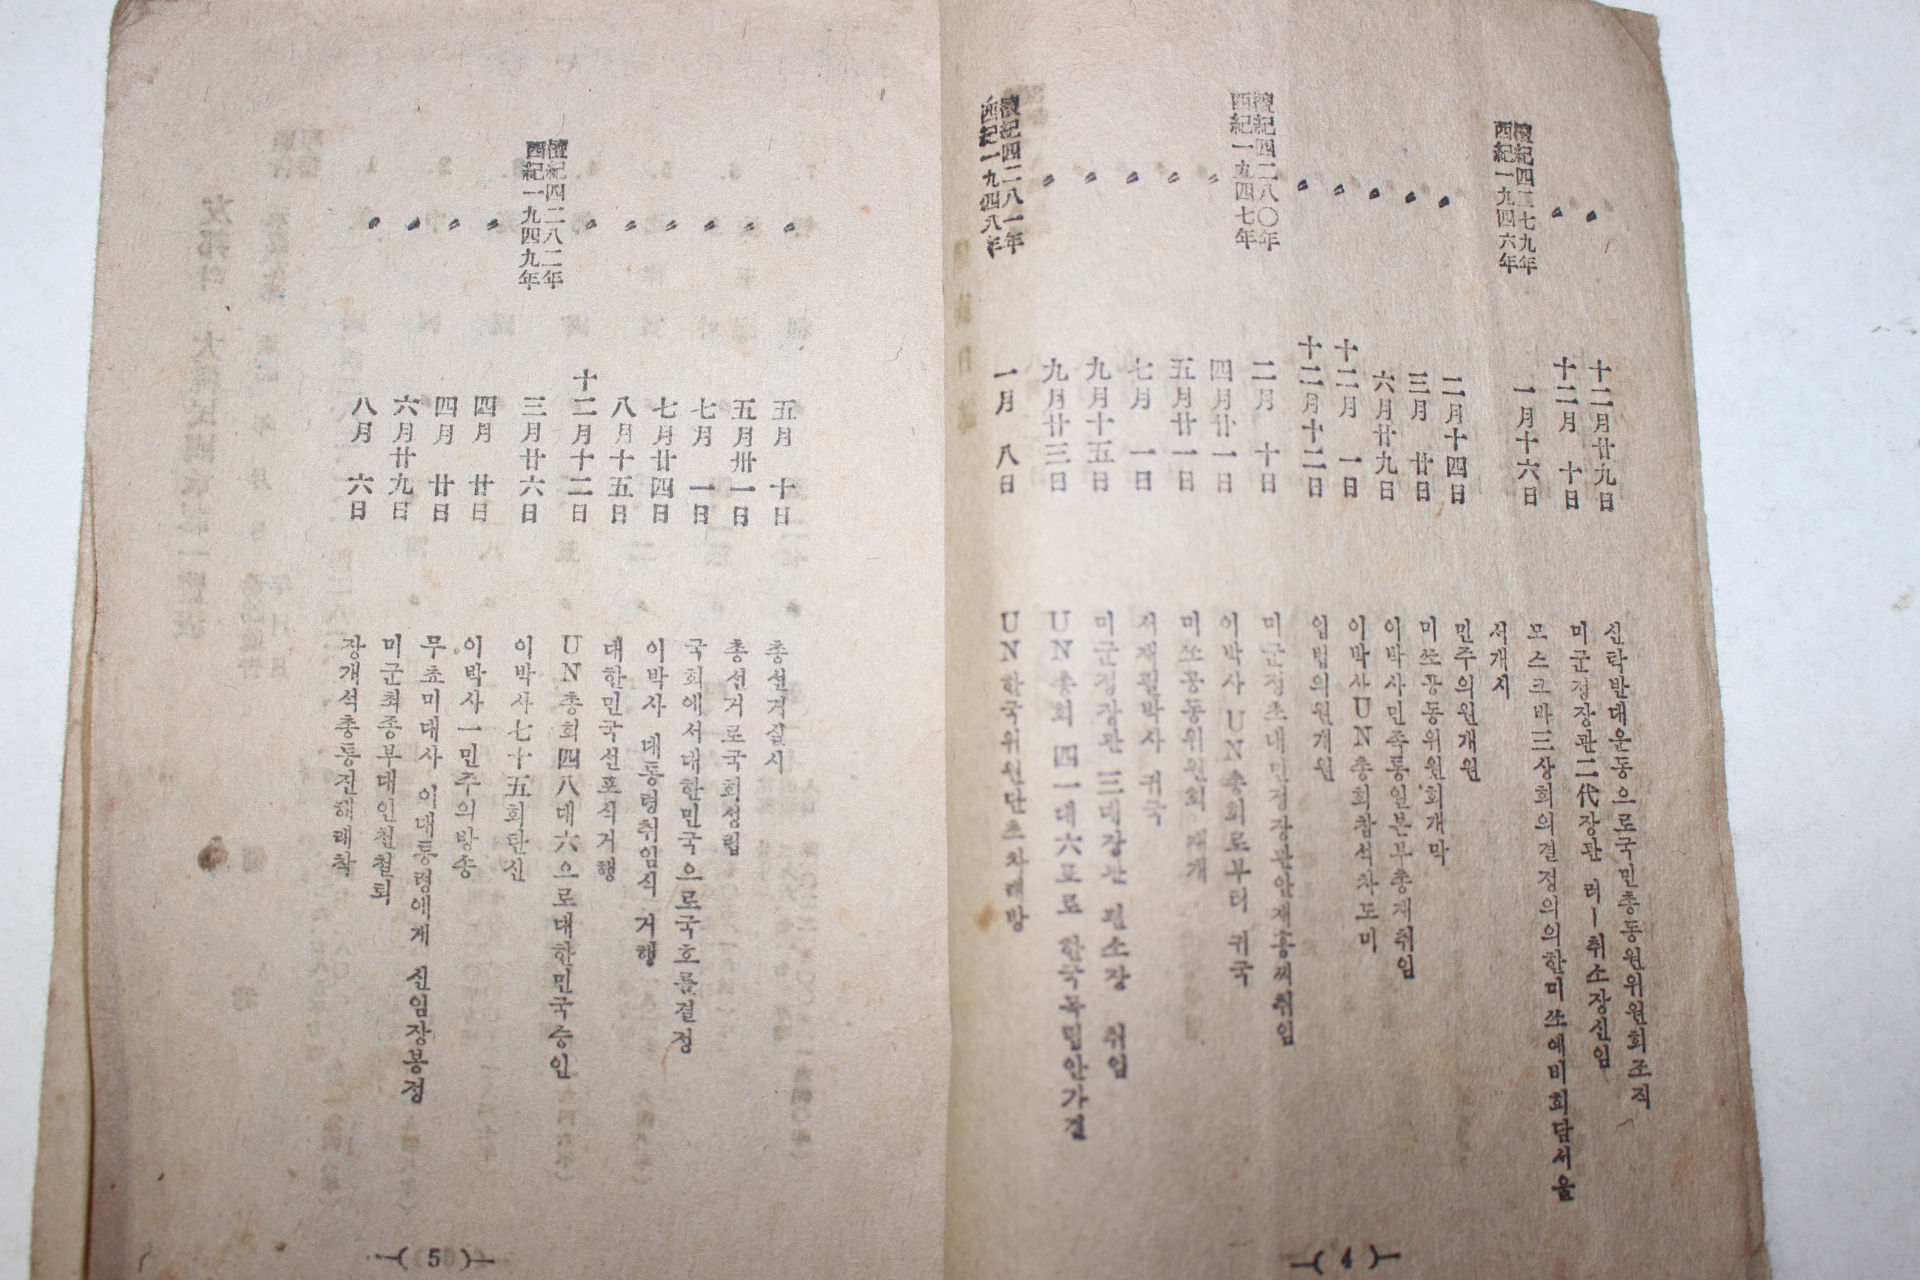 1949년 만병통치자유치료법 국민필독(國民必讀)